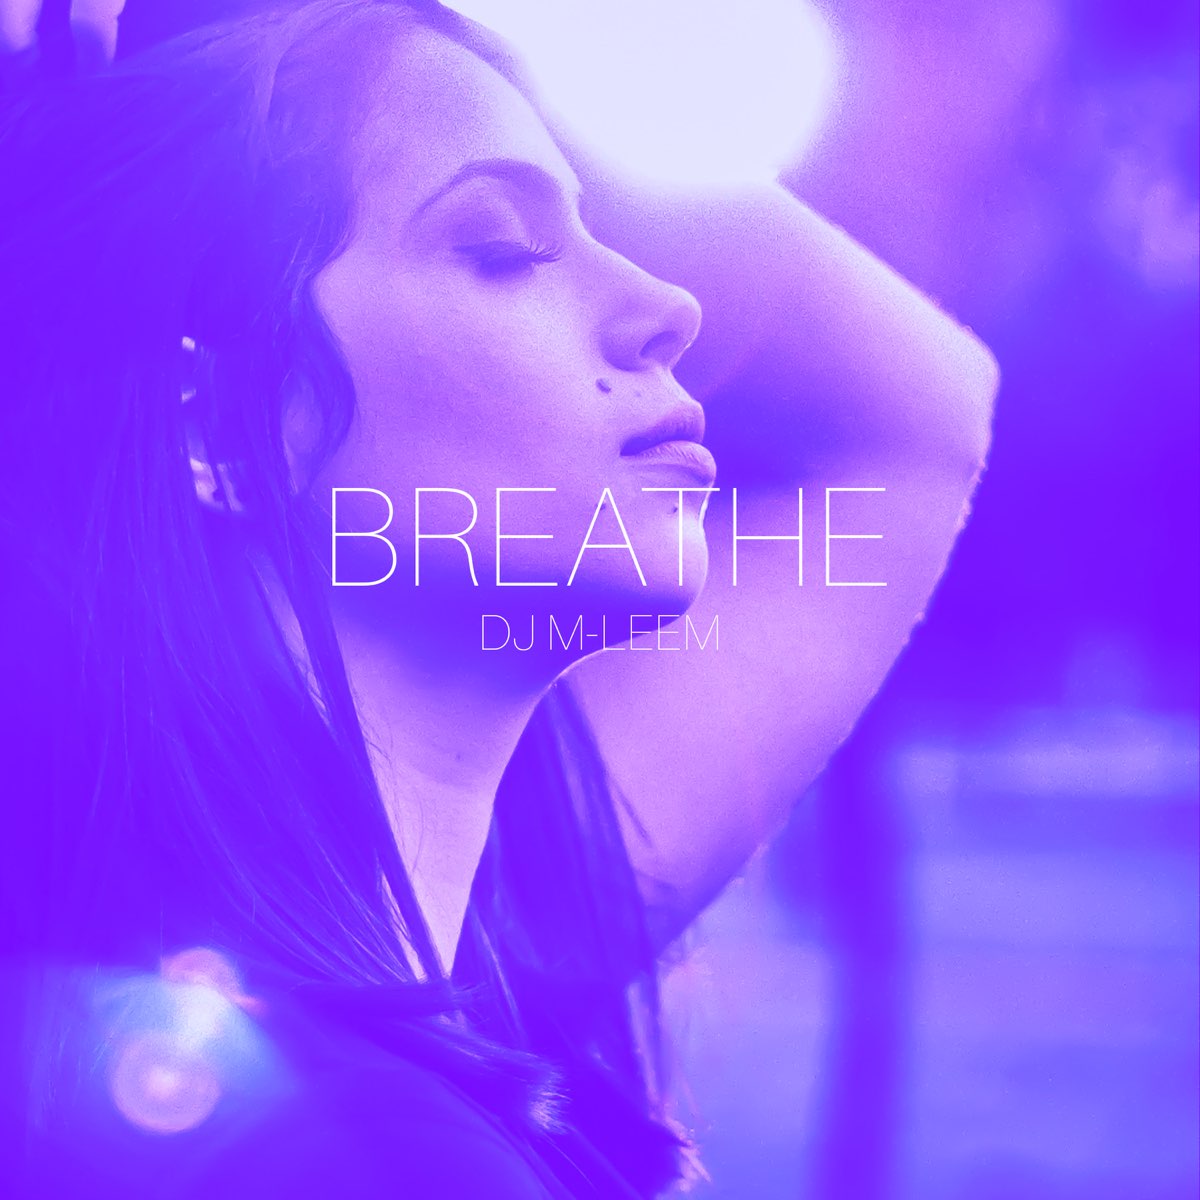 Забываю дышать песня. Breathe песня. Не забывай дышать 2019. Leem Spa. Песня Breathe с бело голубой обложкой.